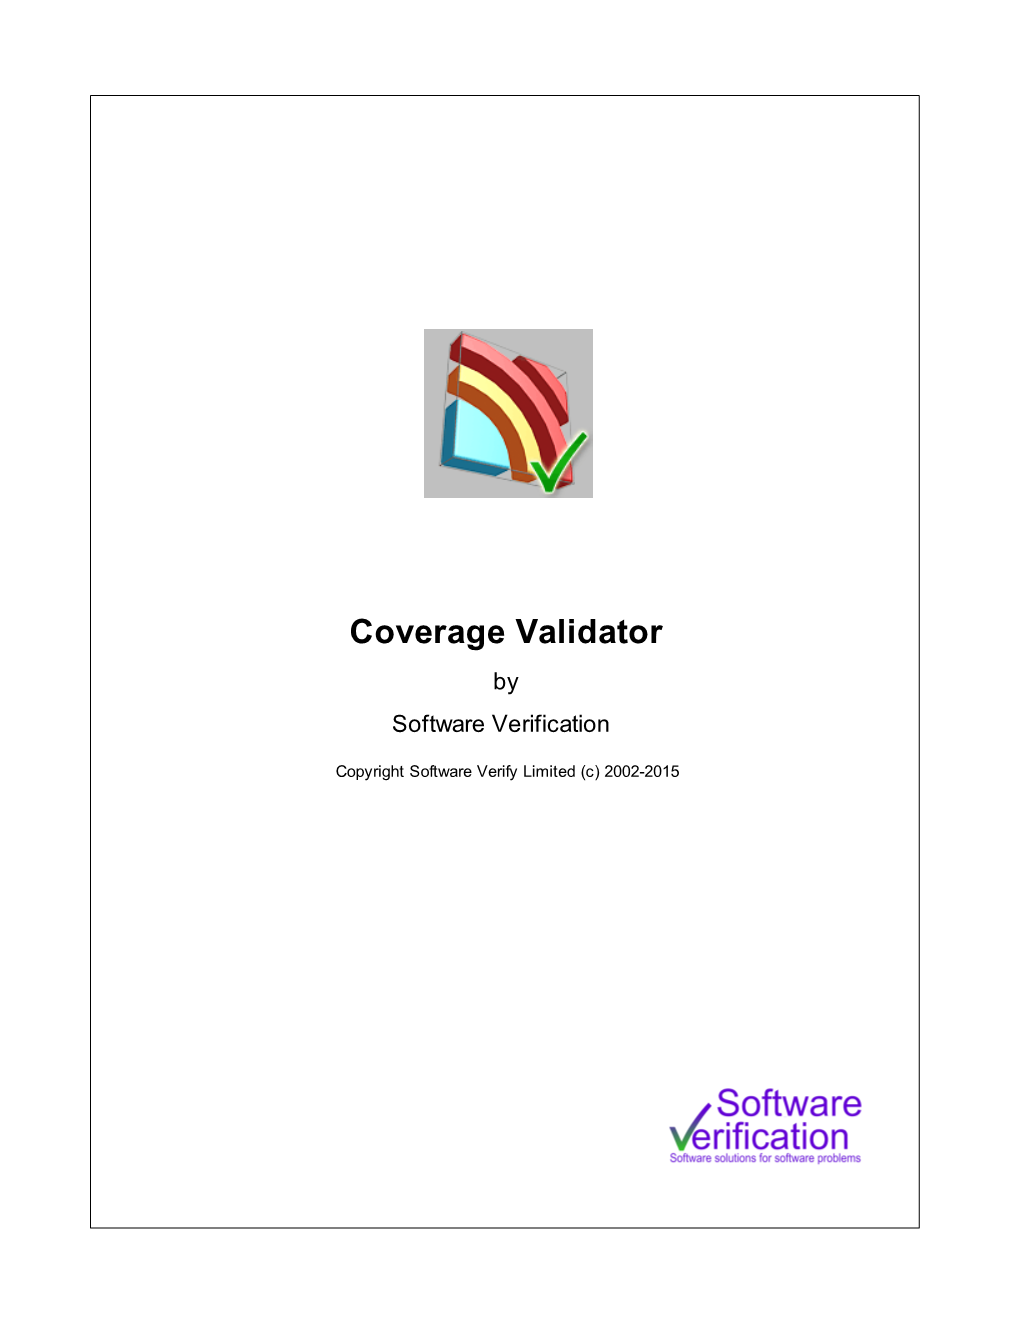 Coverage Validator Help